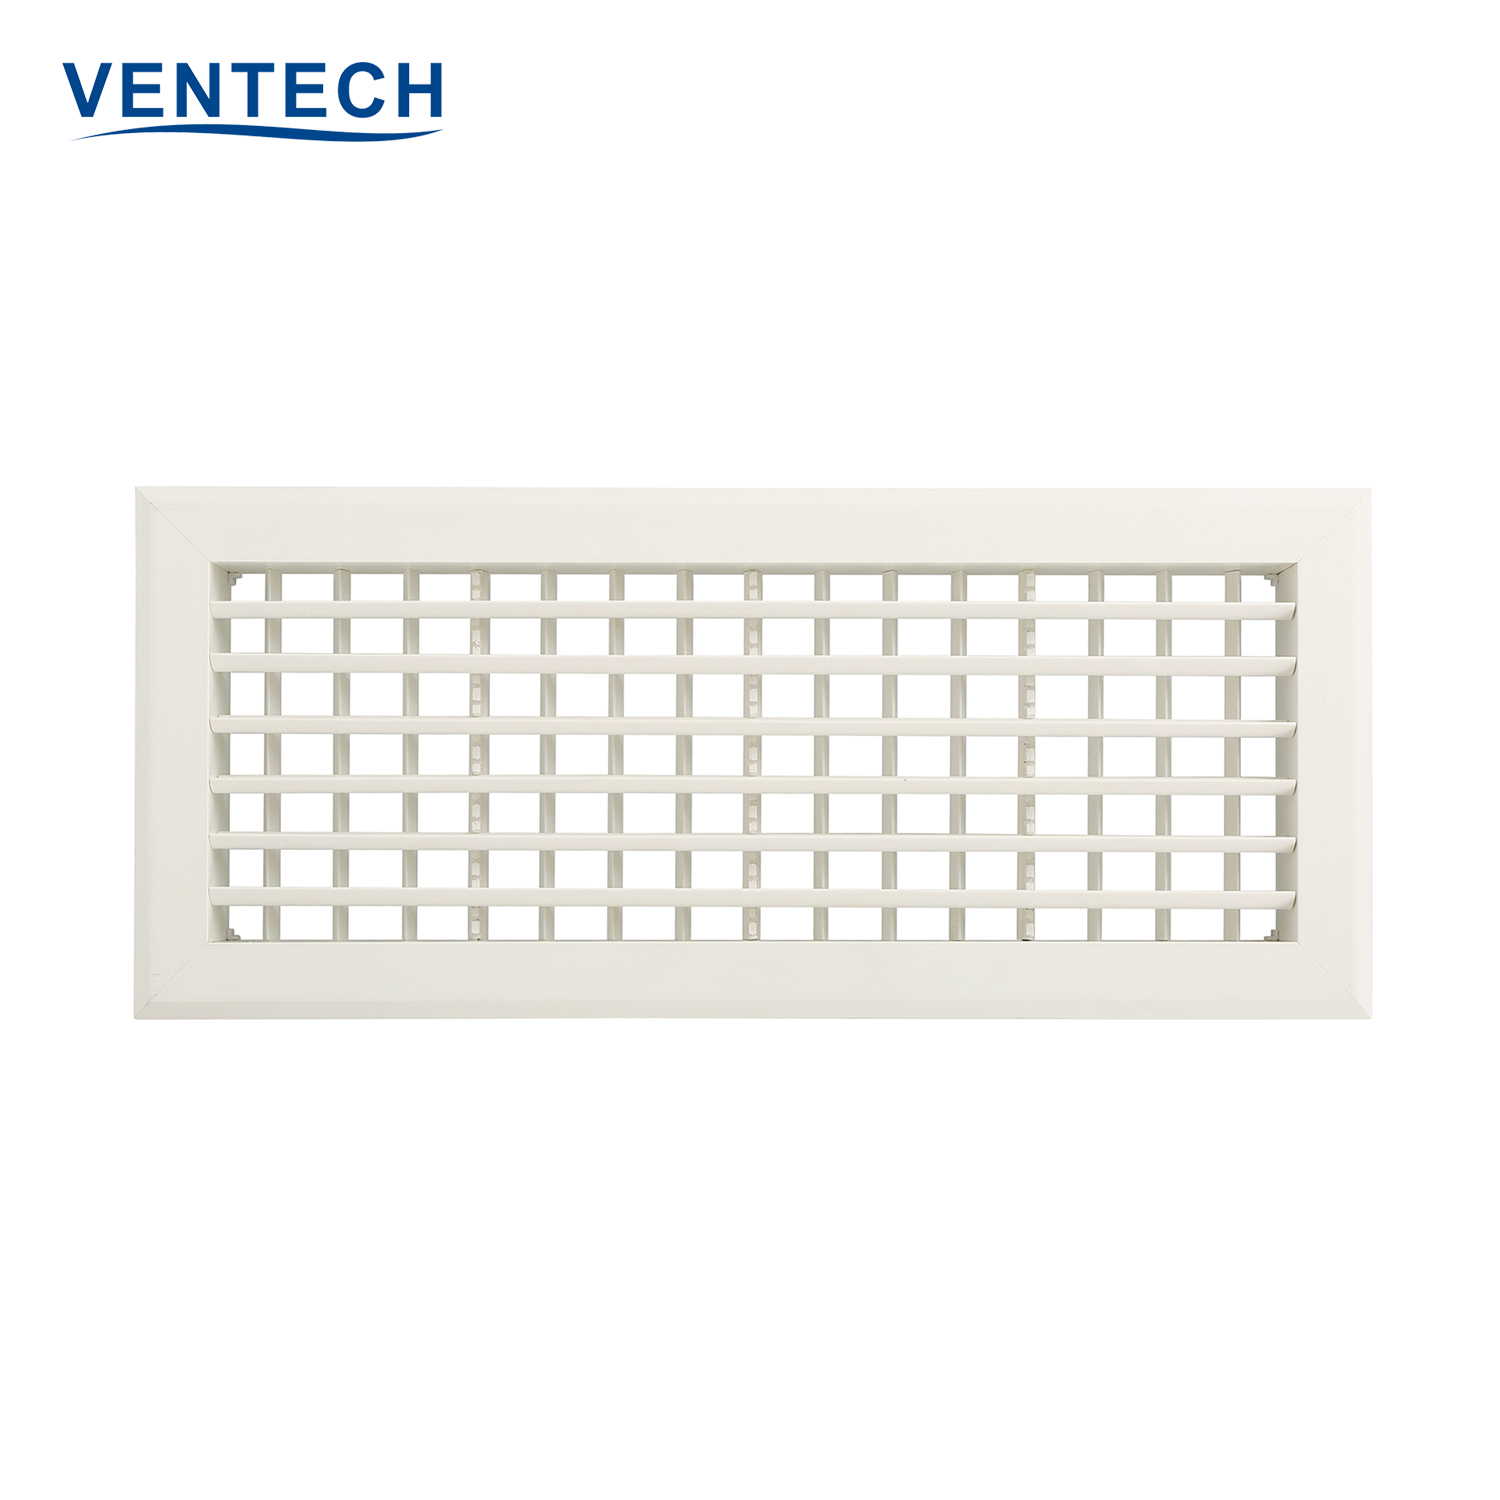 Ventech ventilation grilles for walls wholesale bulk buy-2